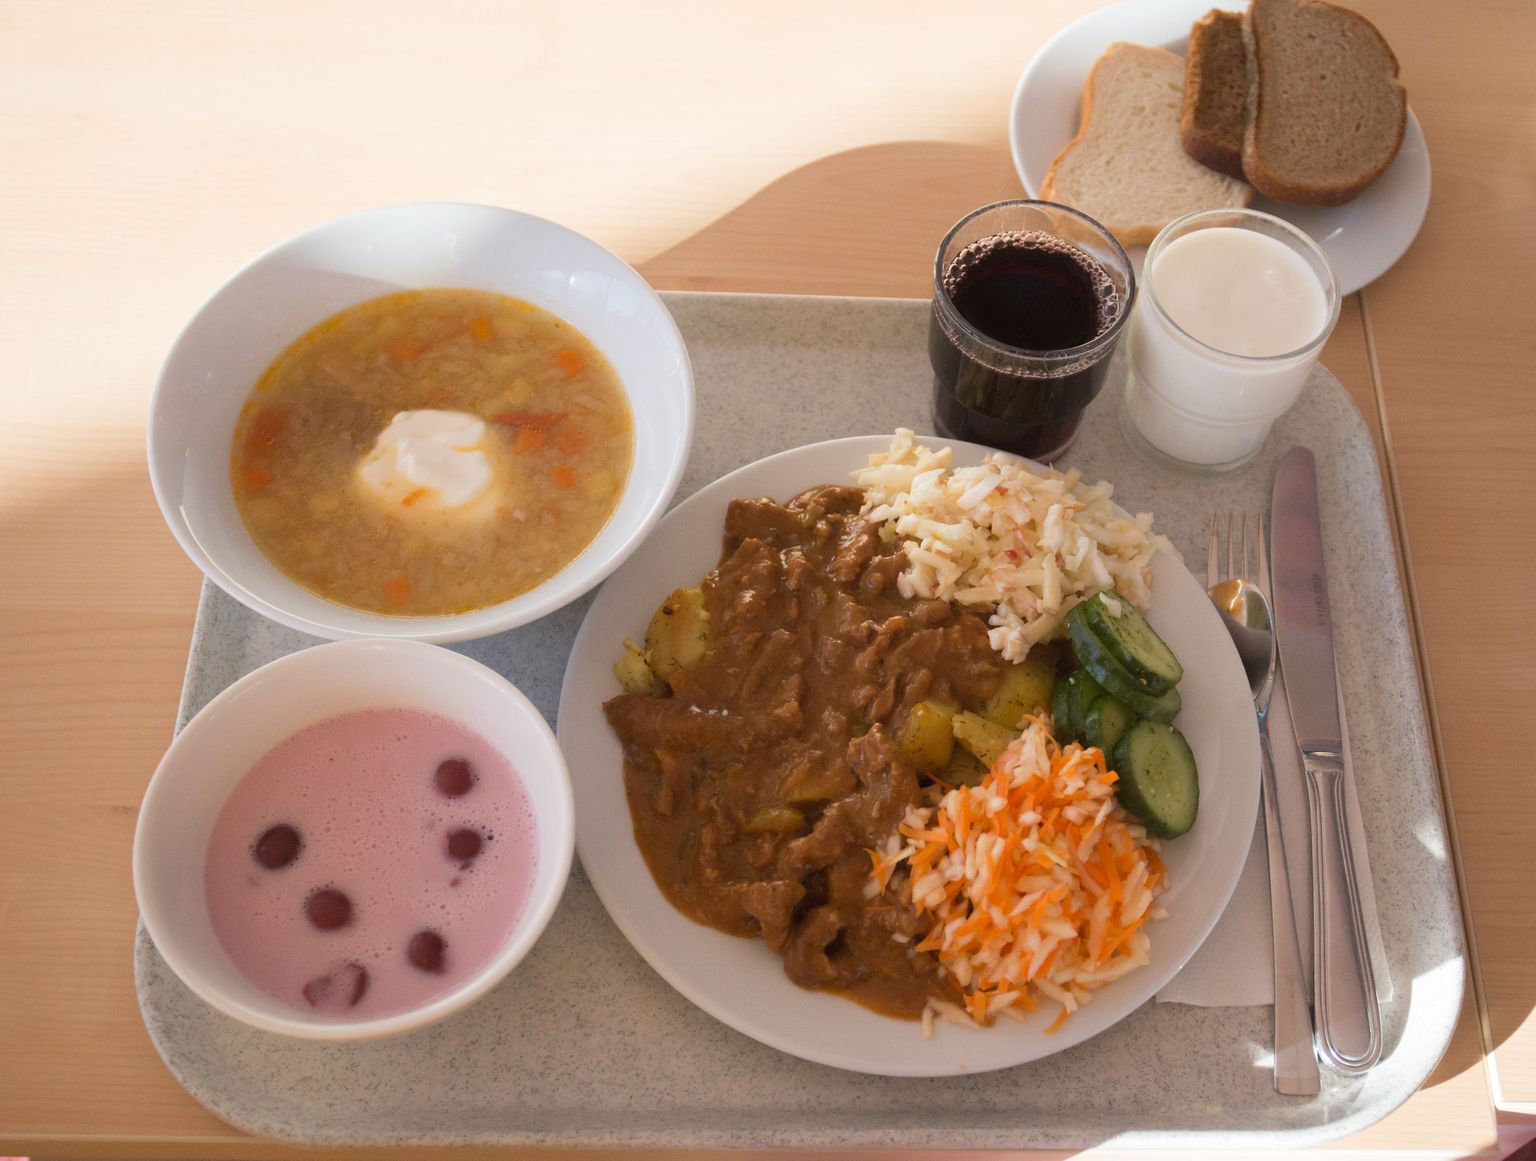 Kaitseväes saab lõunaks supist, praest ja magustoidust koosneva korraliku kolmekäigulise söögi.